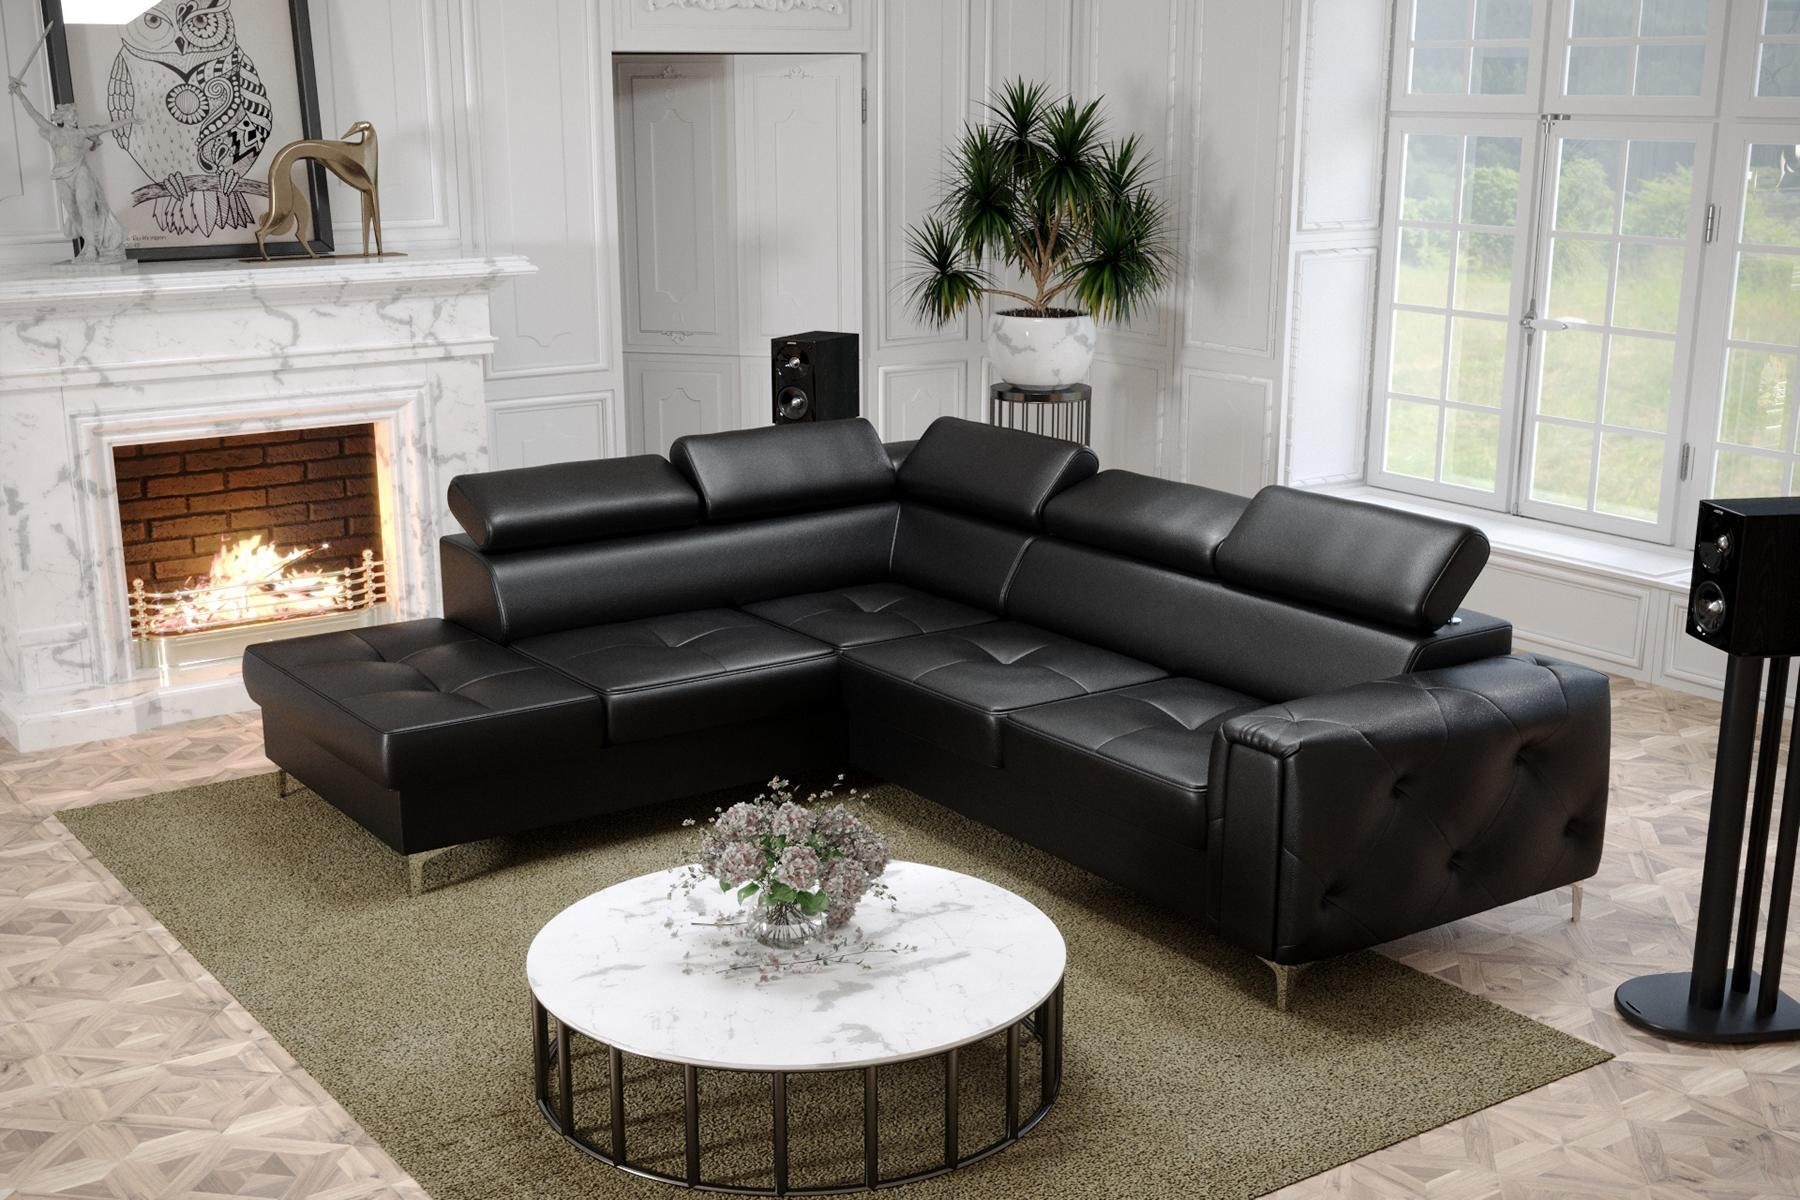 JVmoebel Ecksofa, Design Ecksofa L-Form Couch Polsterung Luxus Wohnzimmer Soft Schwarz